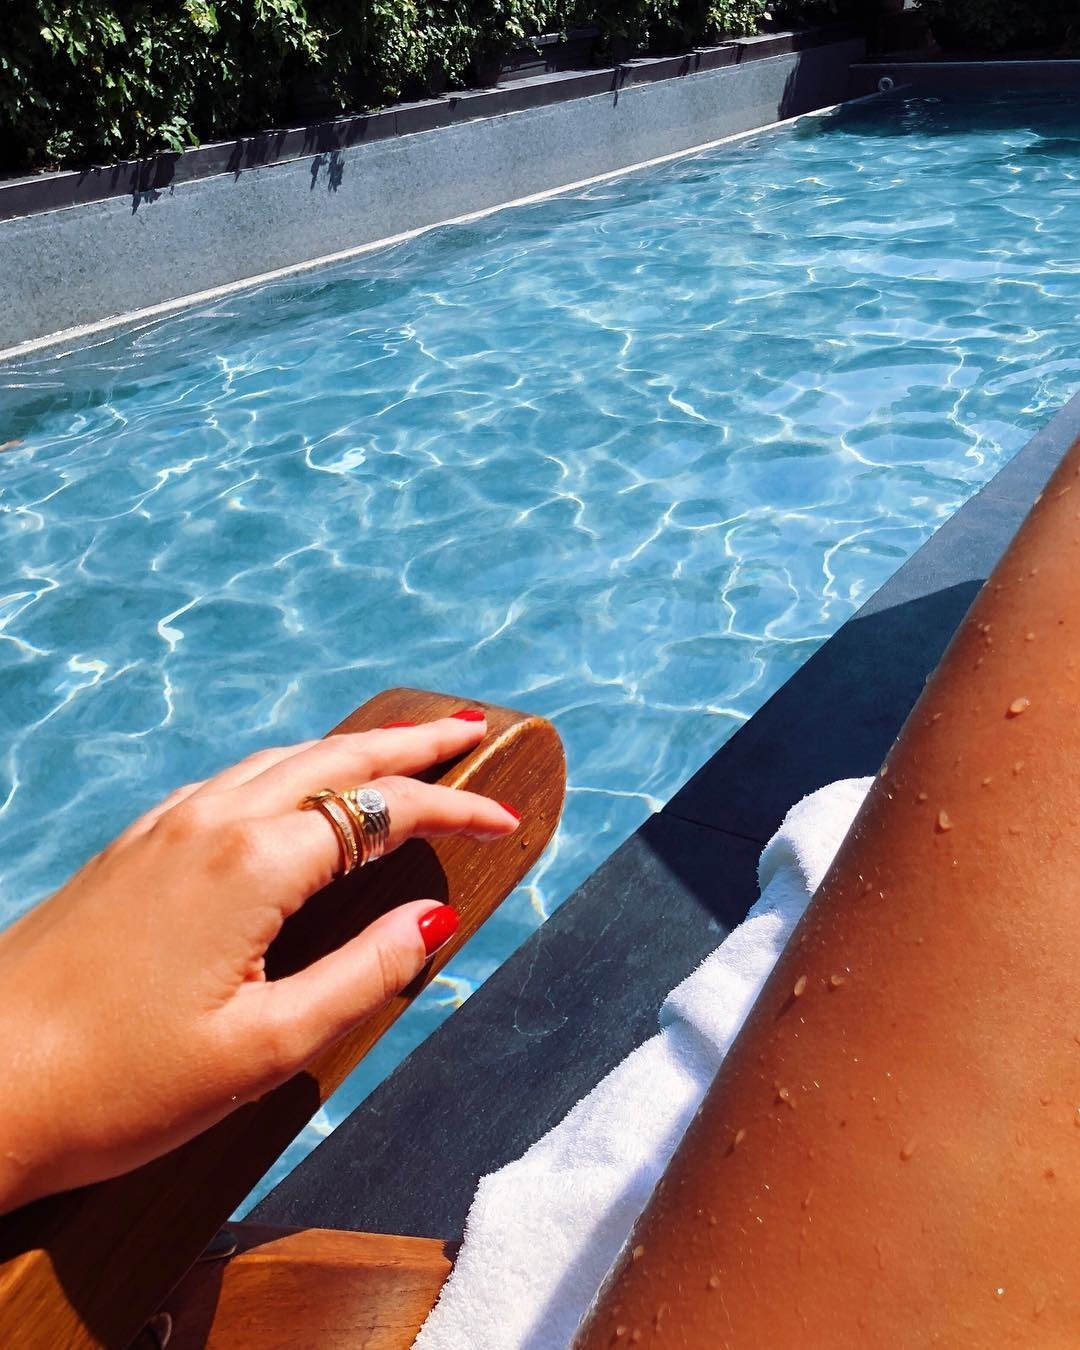 Olivia Culpo'dan Grace Elizabeth'e Haftanın Güzellik Instagramları